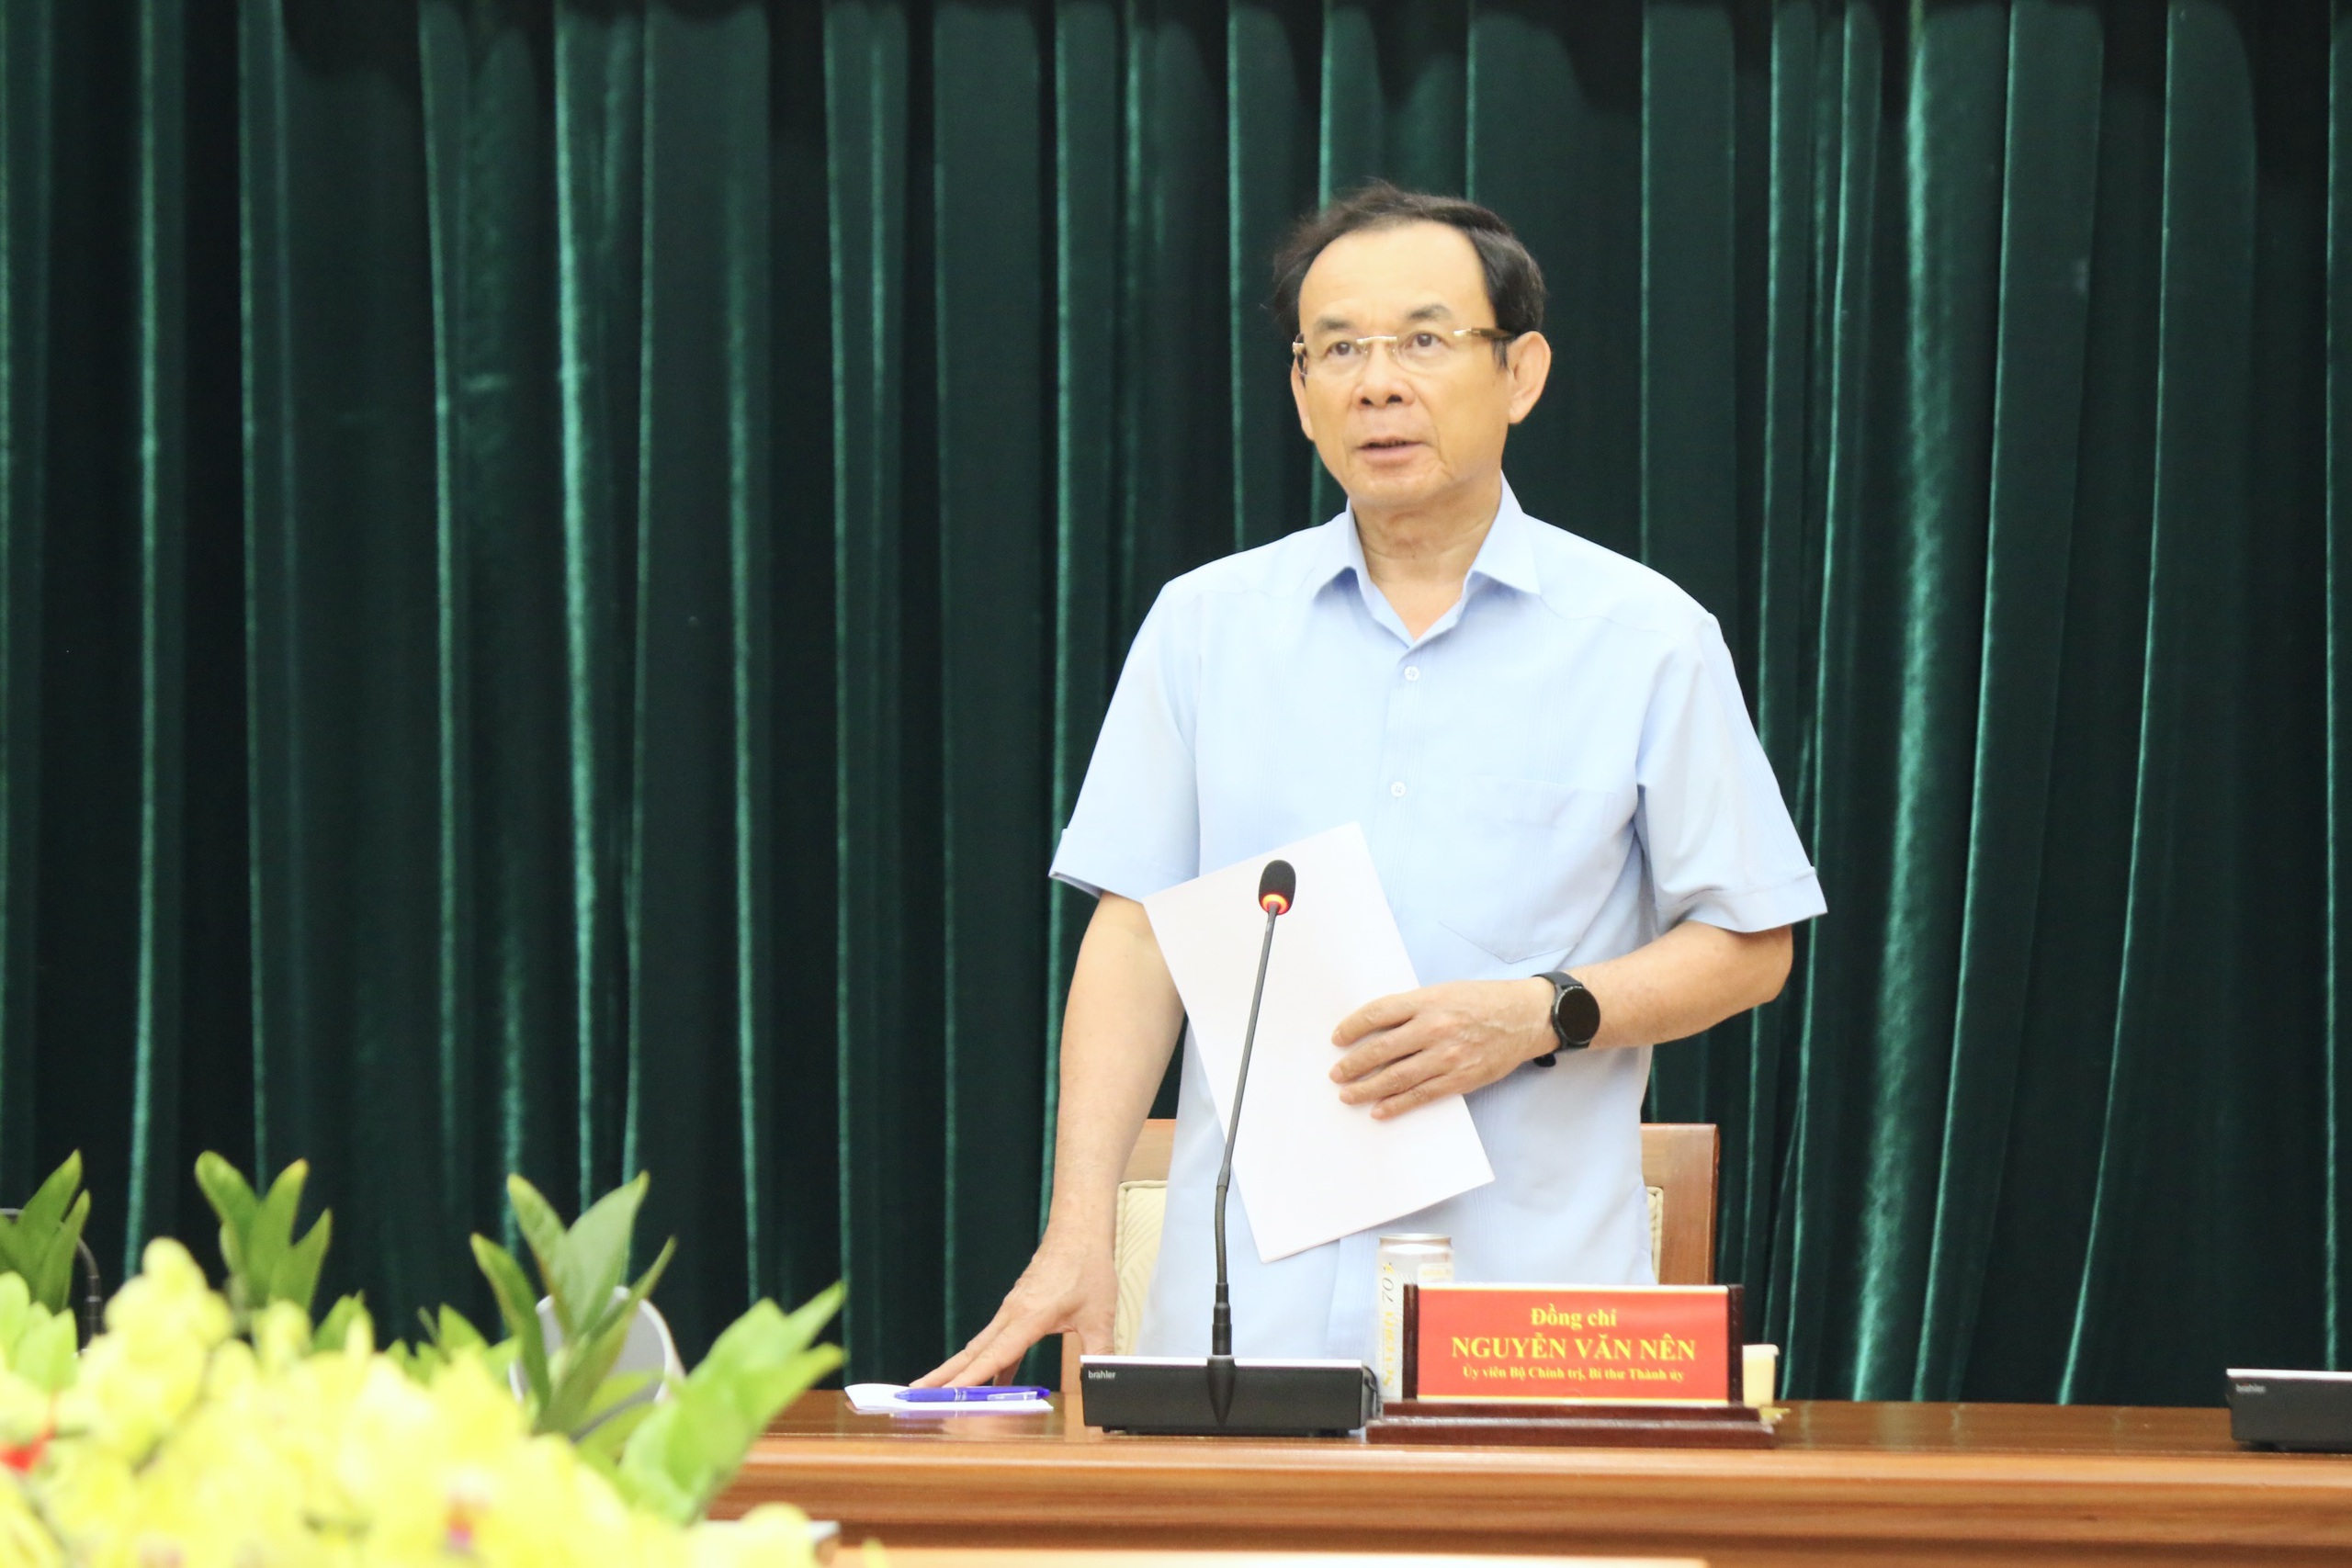 Bí thư Thành ủy Nguyễn Văn Nên chủ trì phiên họp thứ 7 của Ban Chỉ đạo phòng chống tham nhũng, tiêu cực TP.HCM chiều 21.5